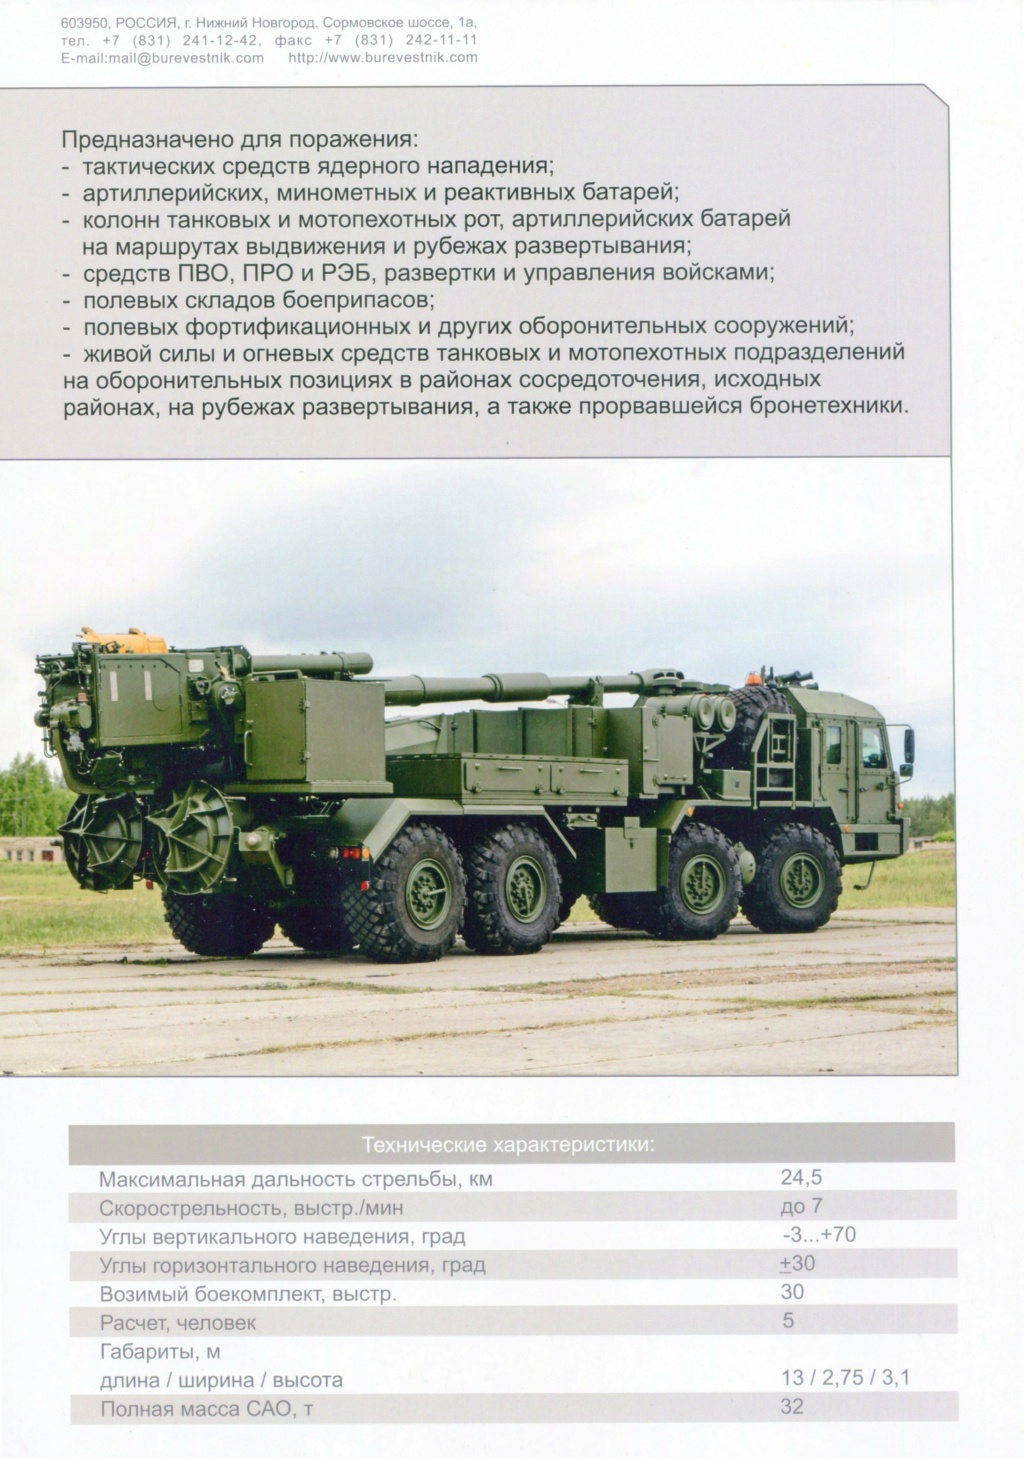 Russian Gun Artillery Thread - Page 19 Jgjgjk10